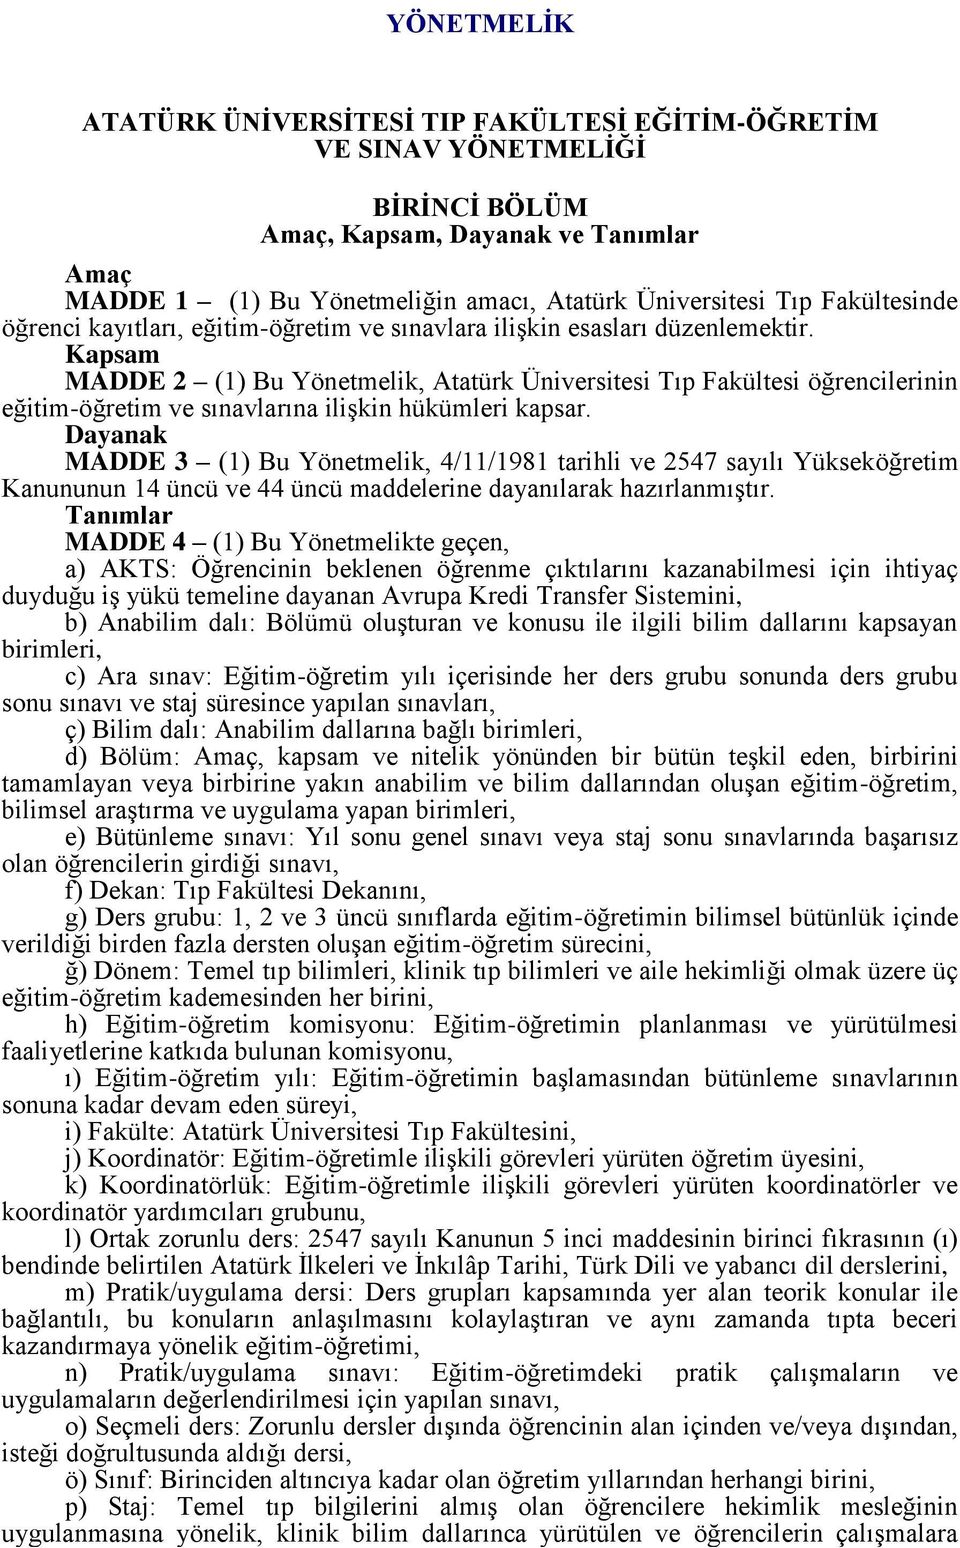 Kapsam MADDE 2 (1) Bu Yönetmelik, Atatürk Üniversitesi Tıp Fakültesi öğrencilerinin eğitim-öğretim ve sınavlarına ilişkin hükümleri kapsar.